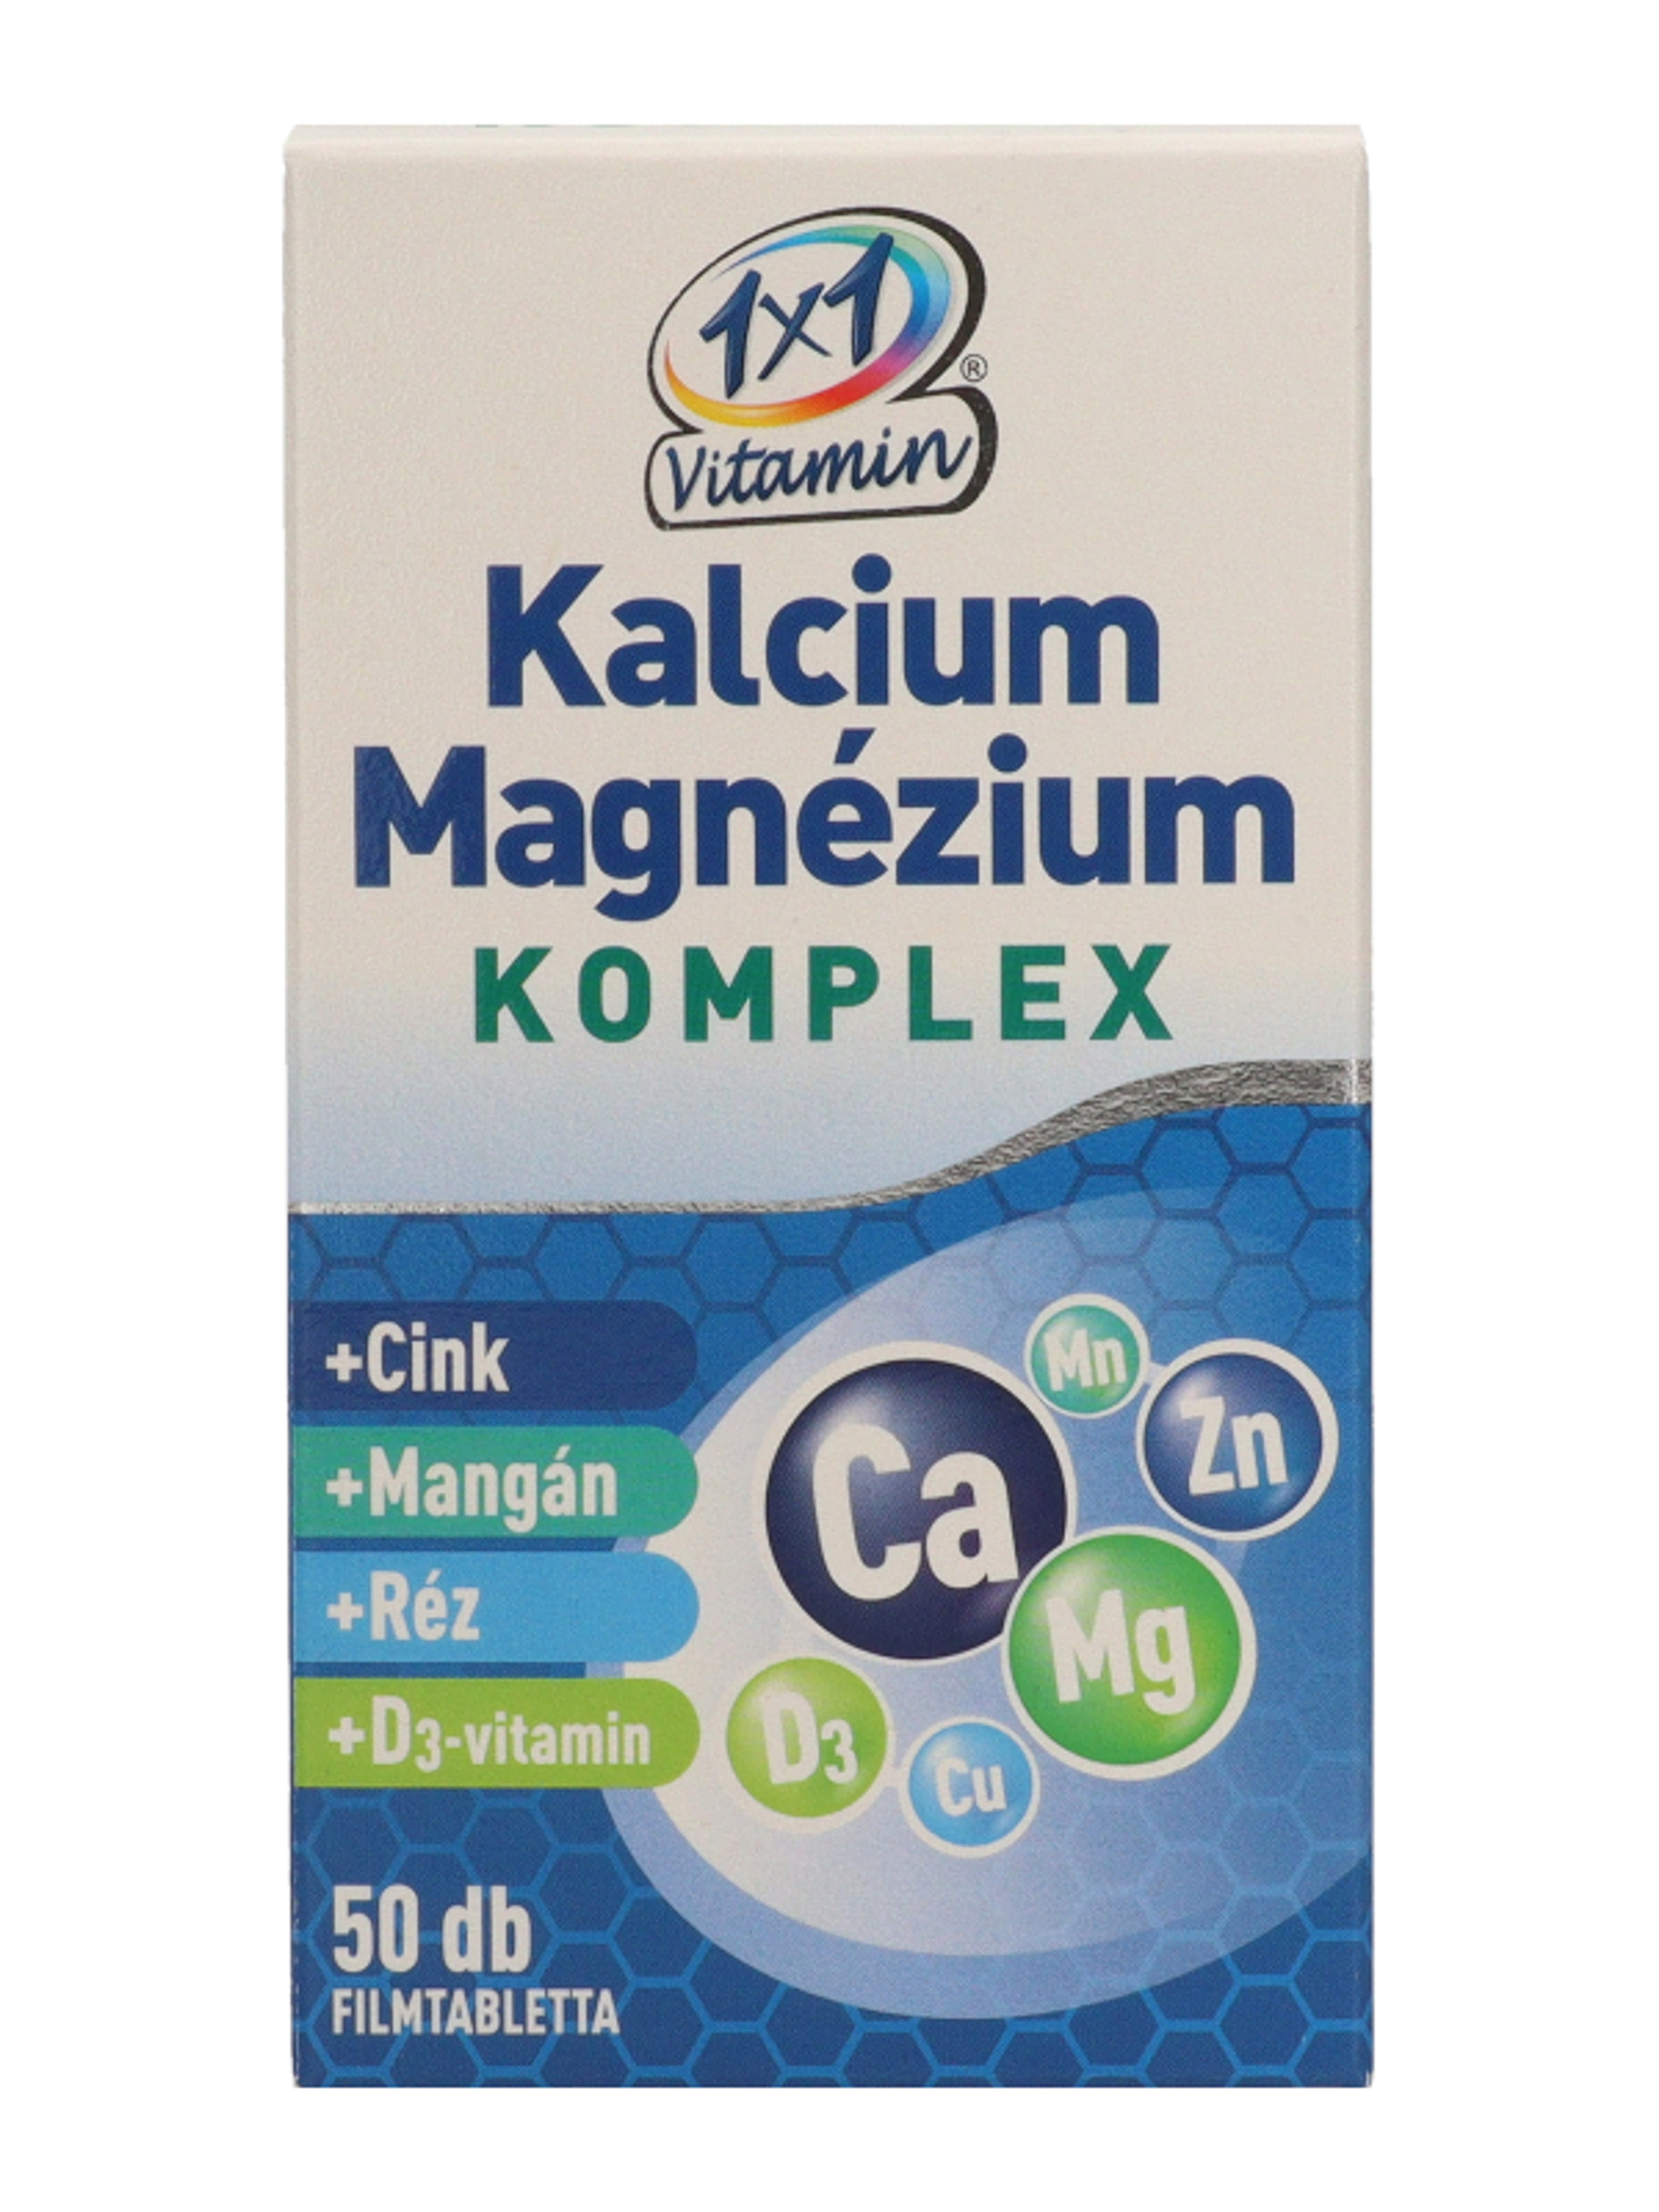 1x1 Vitamin Kalcium + Magnézium Komplex filmtabletta - 50 db-1